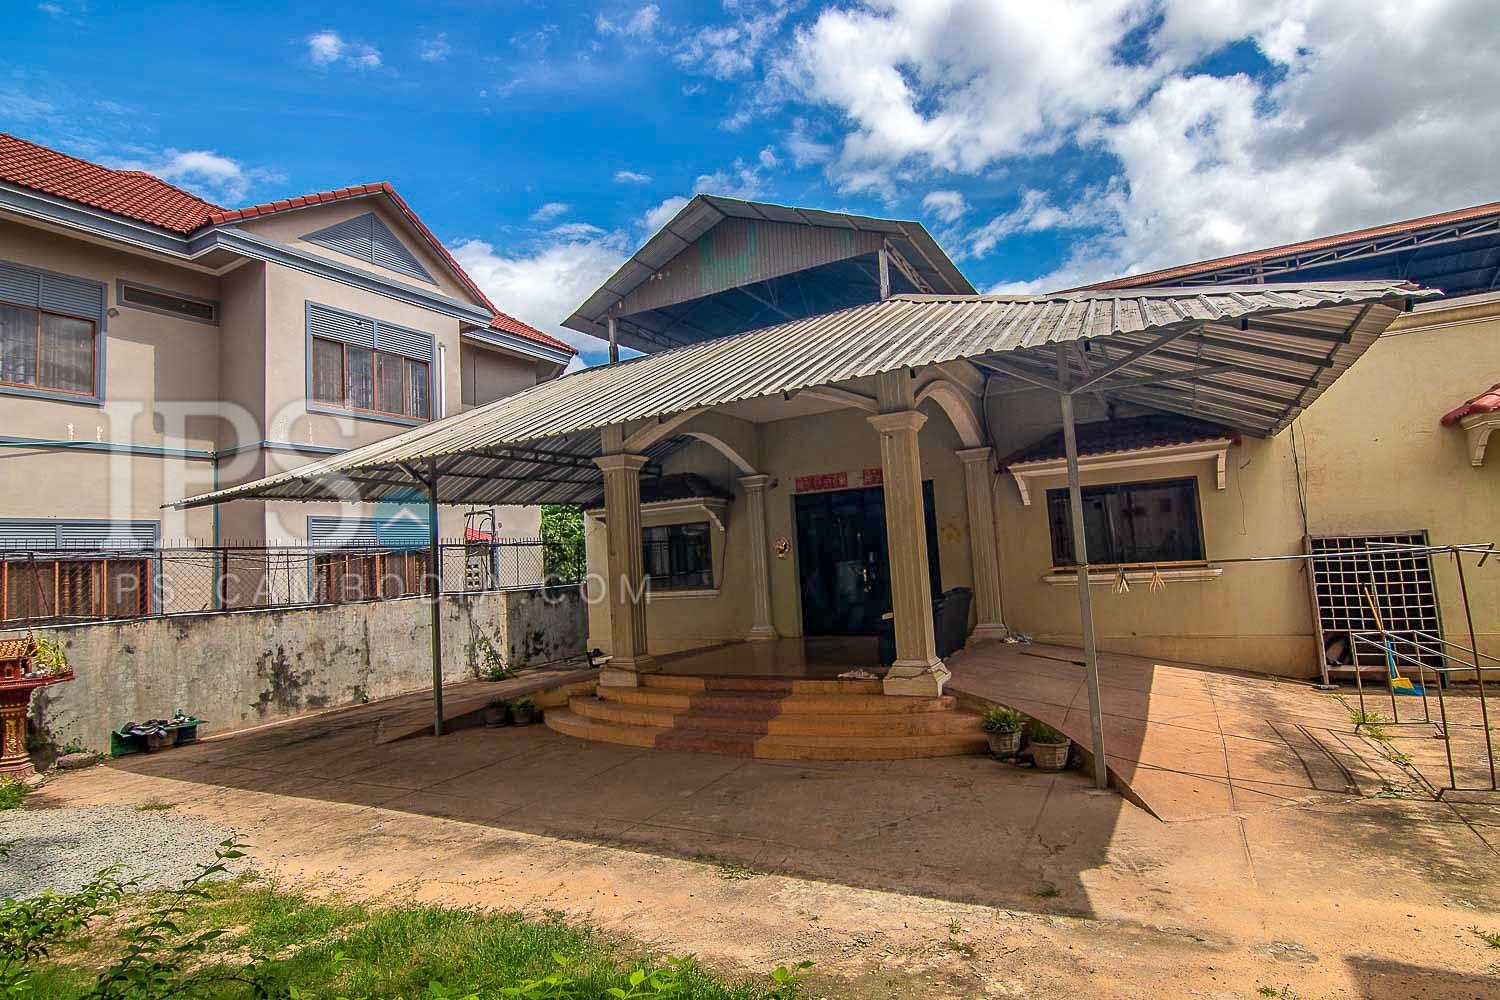 10 Bedroom House For Sale - Svay Dangkum, Siem Reap